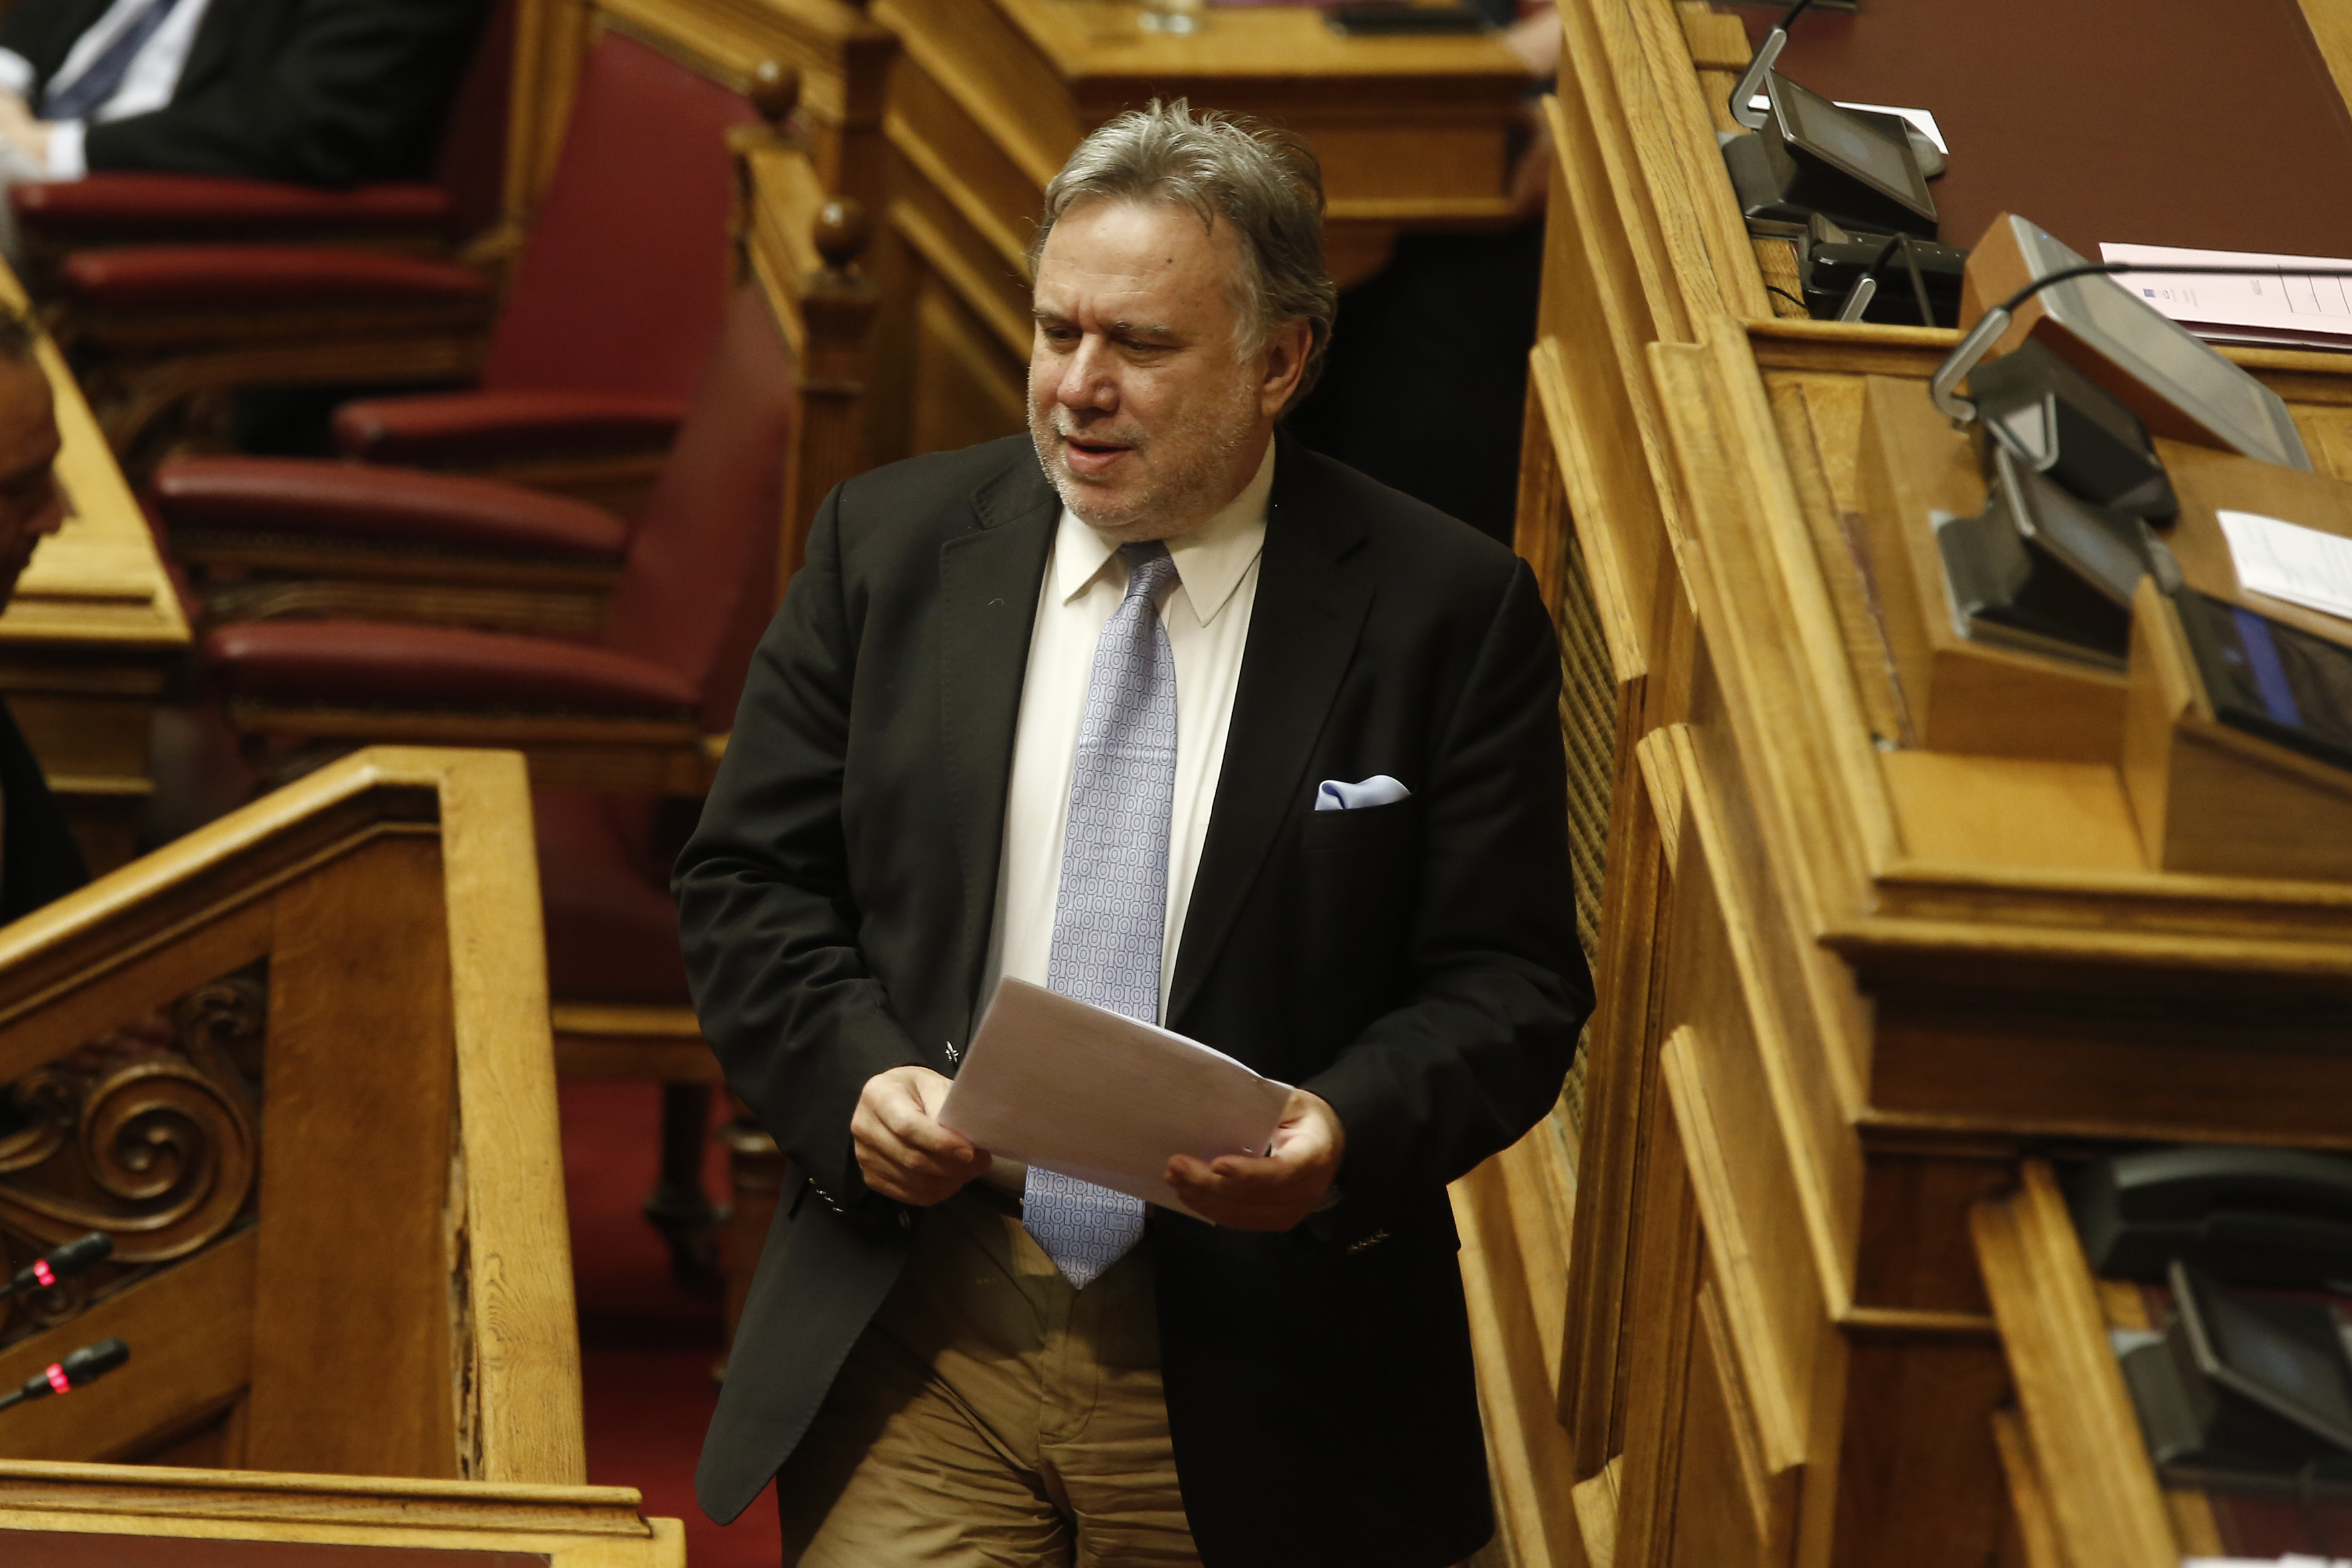 Ο αναπληρωτής υπουργός Εξωτερικών,αρμόδιος για Ευρωπαϊκές Υποθέσεις Γιώργος Κατρούγκαλος μιλάει από το βήμα της Βουλής στη συζήτηση για τη πρόταση δυσπιστίας που κατέθεσε ο πρόεδρος της ΝΔ Κυριάκος Μητσοτάκης στην αίθουσα της Ολομέλειας της Βουλής, Πέμπτη 14 Ιουνίου 2018. ΑΠΕ-ΜΠΕ/ΑΠΕ-ΜΠΕ/ΑΛΕΞΑΝΔΡΟΣ ΒΛΑΧΟΣ